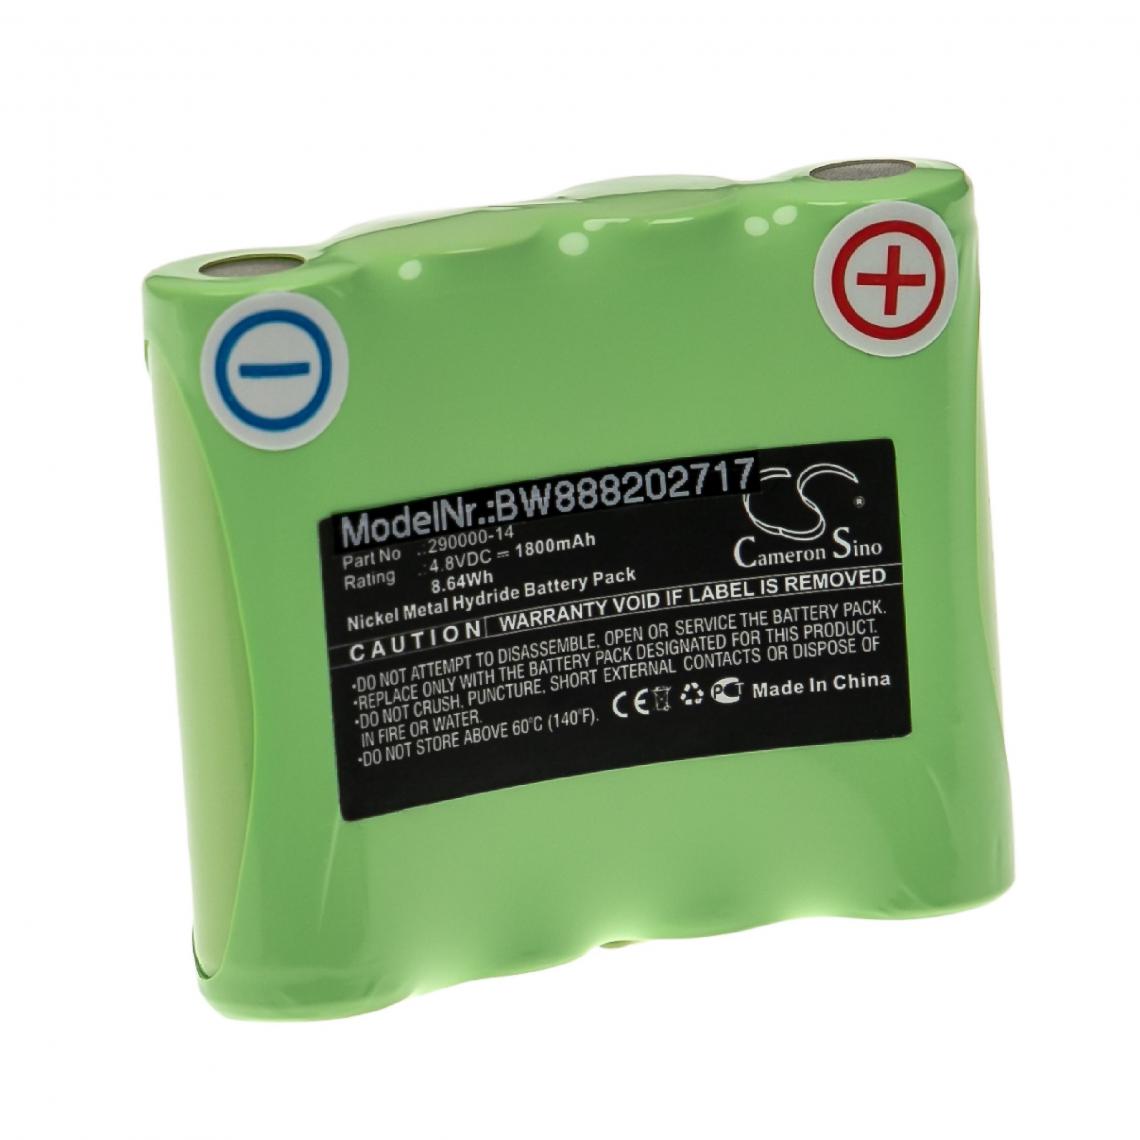 Vhbw - vhbw Batterie remplacement pour Rotationslaser 290000-14 pour outil de mesure (1800mAh, 4,8V, NiMH) - Piles rechargeables